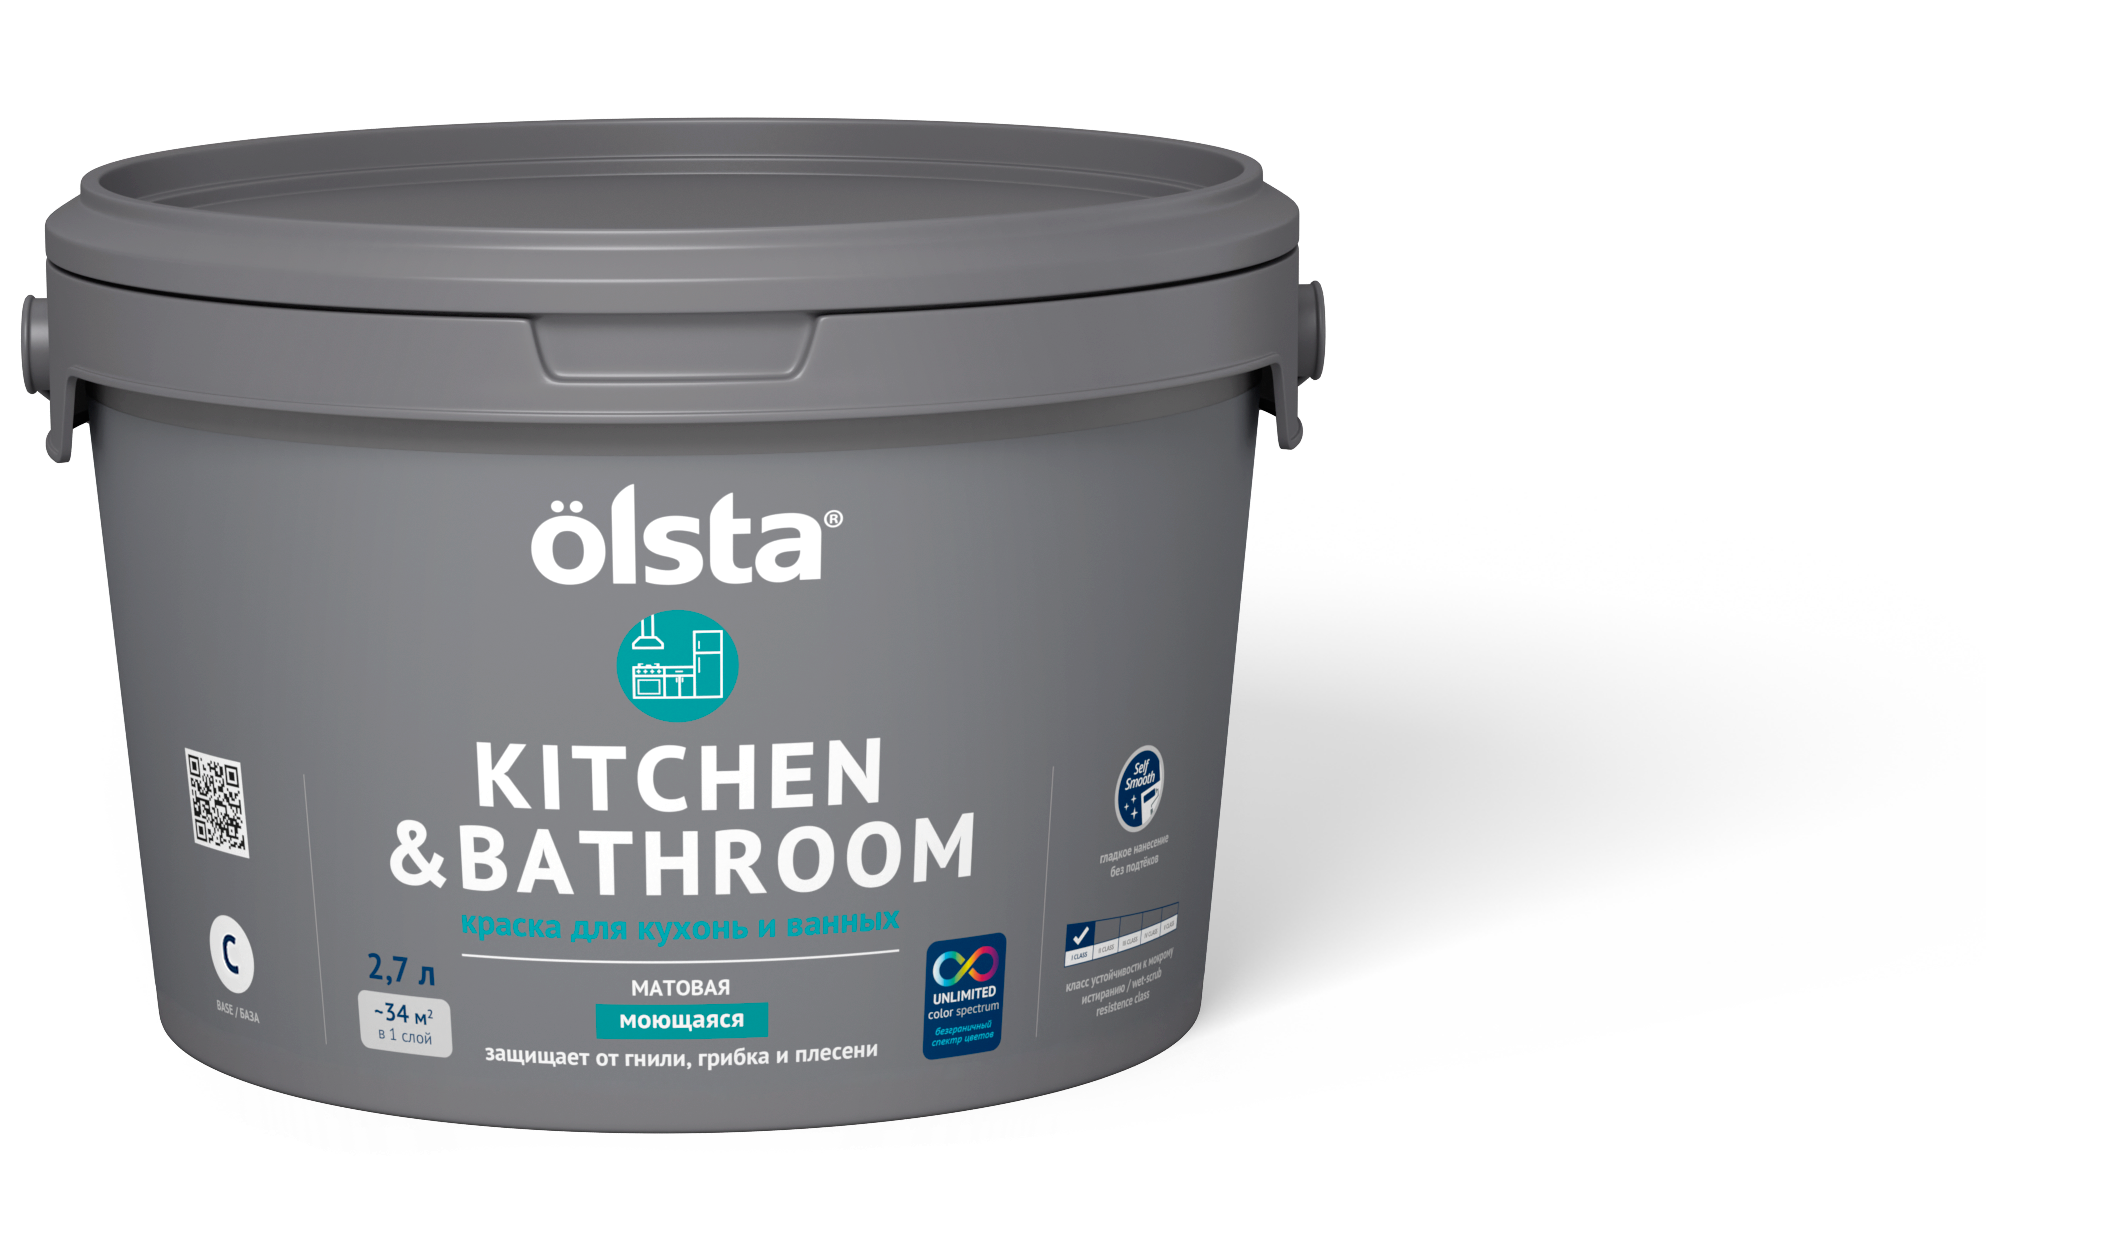 краска для кухонь и ванных olsta kitchen Краска для кухонь и ванных Olsta Kitchen&bathroom База C 2,7 л (только под колеровку)